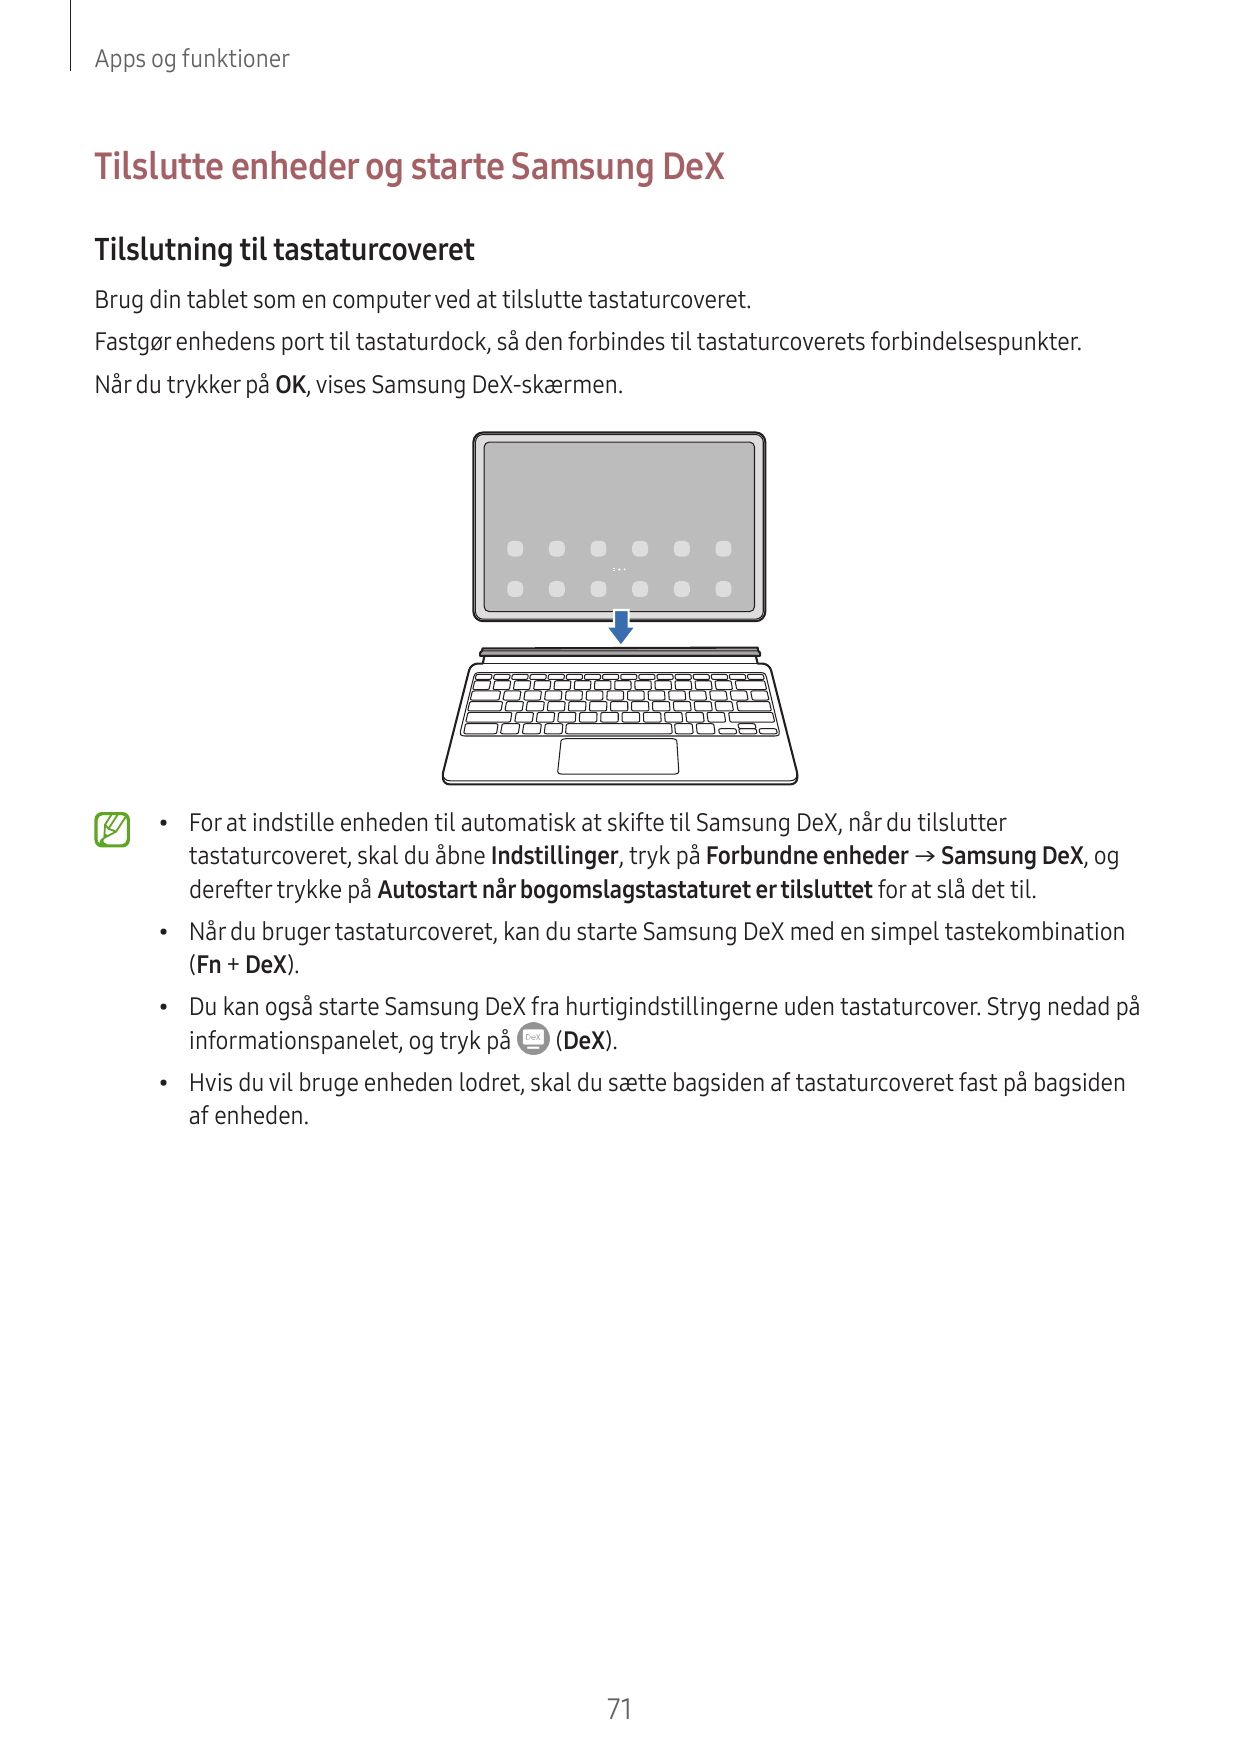 Apps og funktionerTilslutte enheder og starte Samsung DeXTilslutning til tastaturcoveretBrug din tablet som en computer ved at t